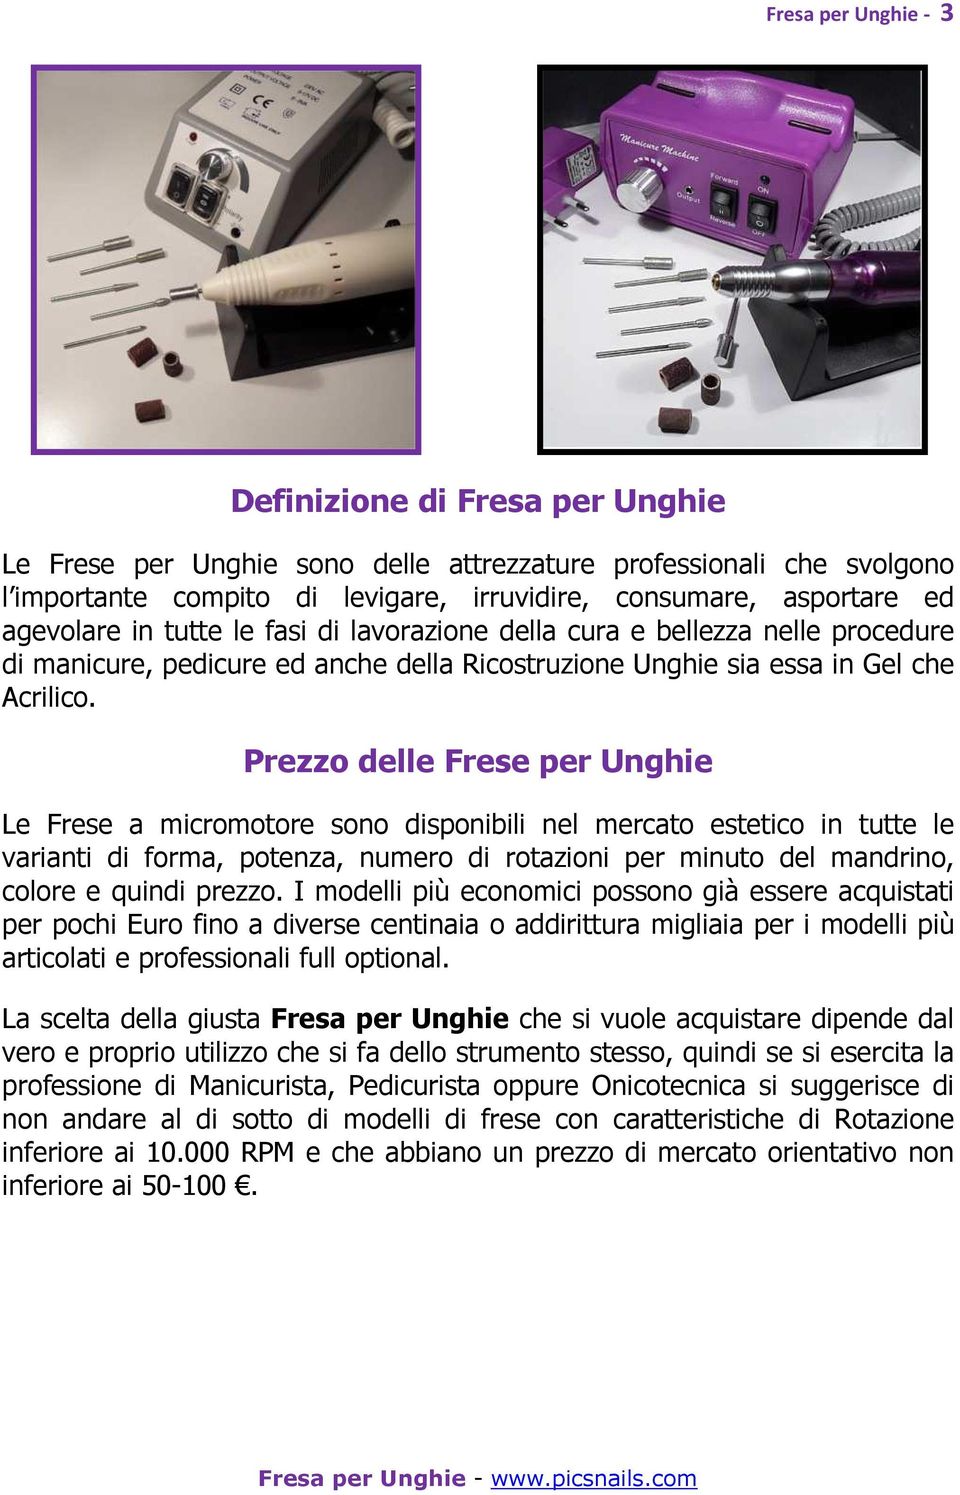 Prezzo delle Frese per Unghie Le Frese a micromotore sono disponibili nel mercato estetico in tutte le varianti di forma, potenza, numero di rotazioni per minuto del mandrino, colore e quindi prezzo.